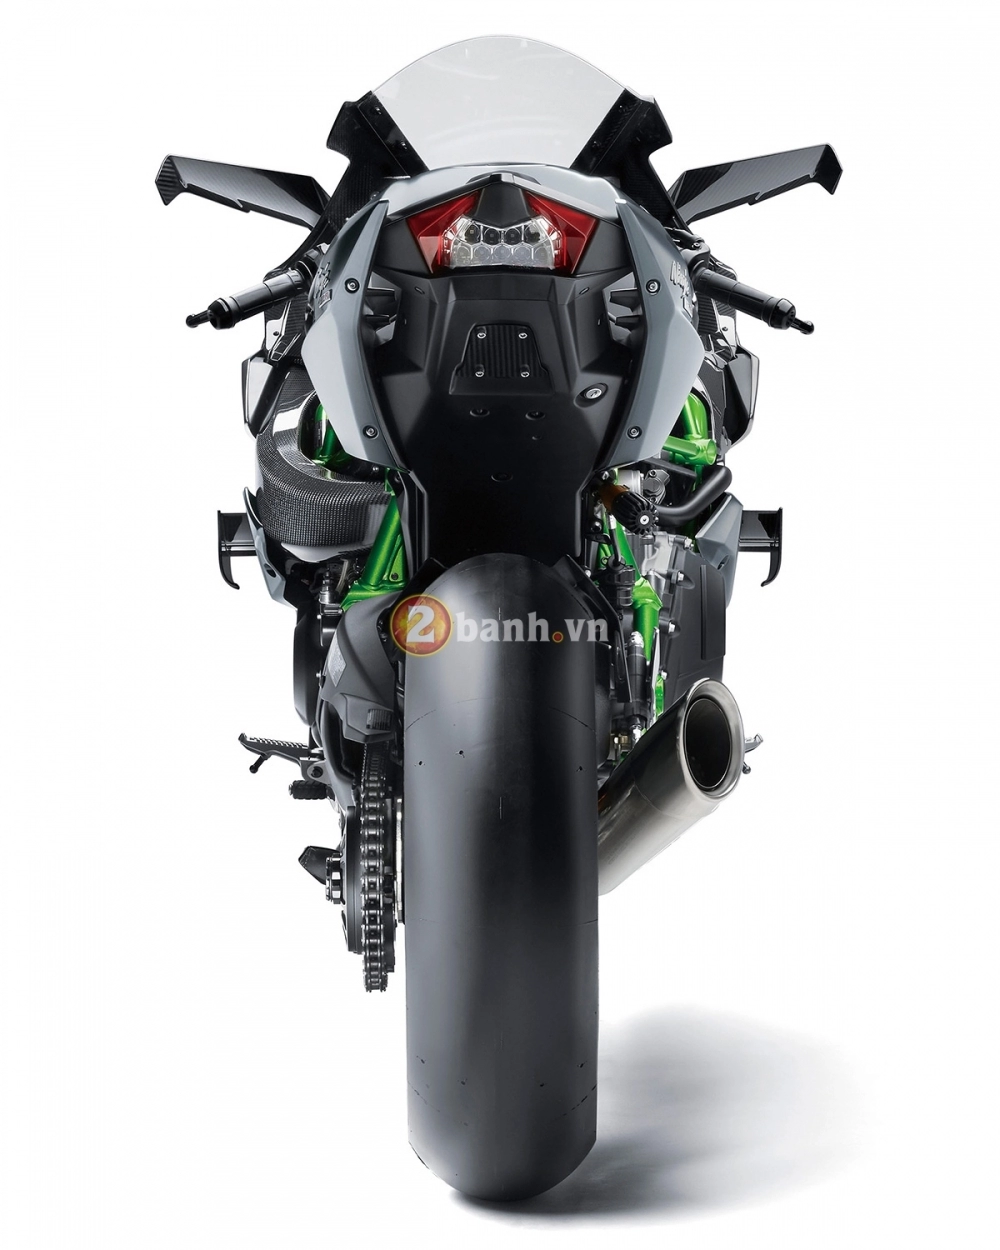 Kawasaki ninja h2r 2017 chính thức cho đặt hàng với giá gần 13 tỷ đồng